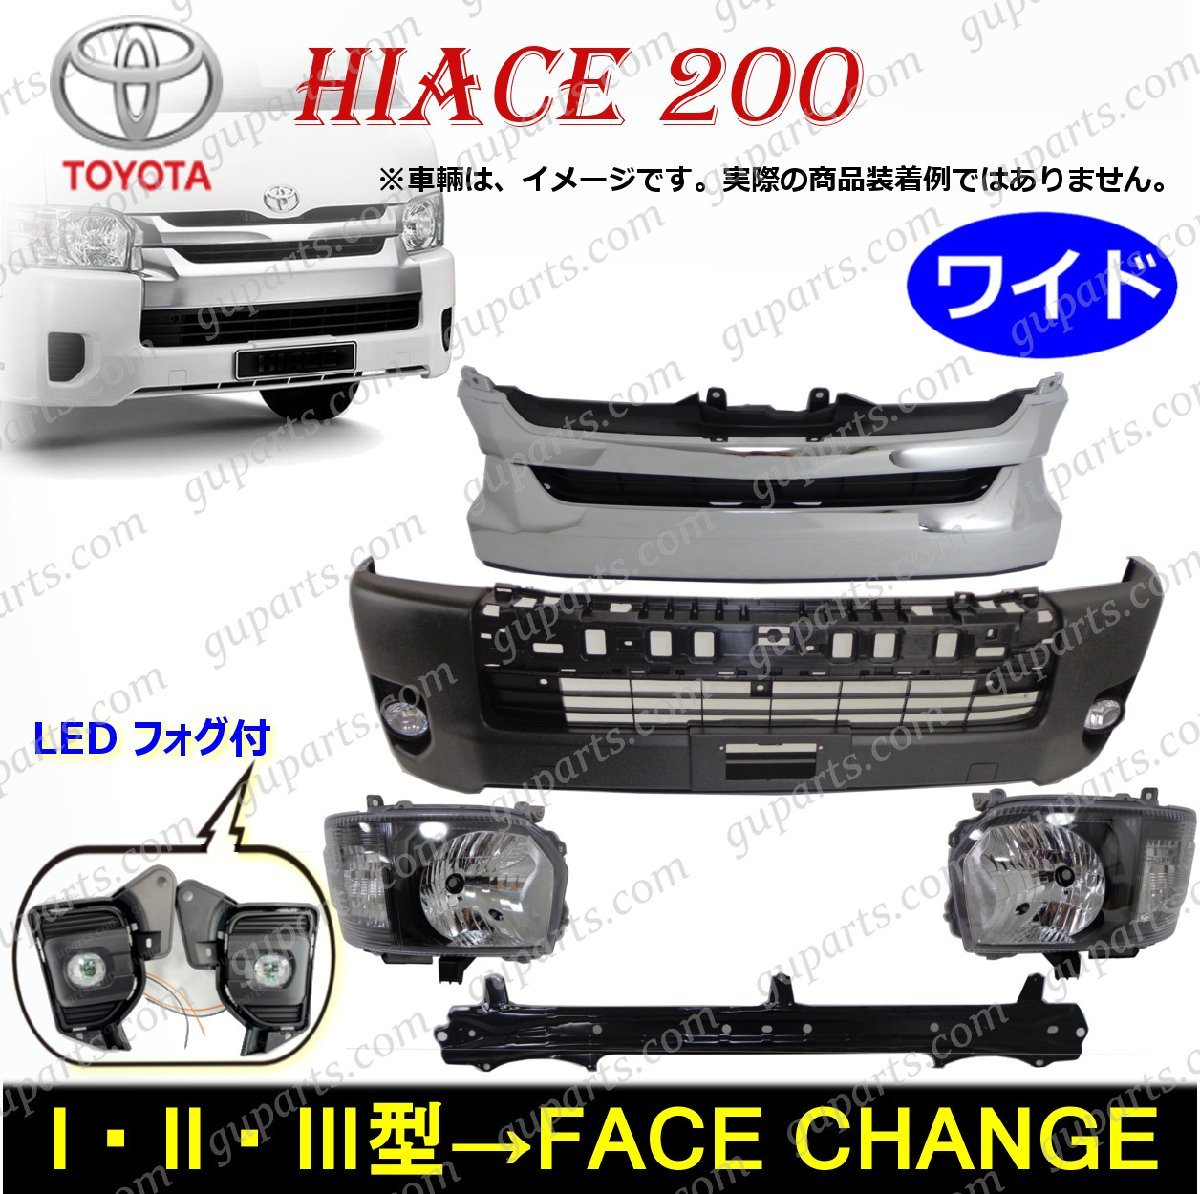 ハイエース 200系 4型 ワイド フェイスチェンジ ハロゲン ヘッドライト ブラック LEDフォグ フロント バンパー グリル キット 1型 2型 3型の画像1